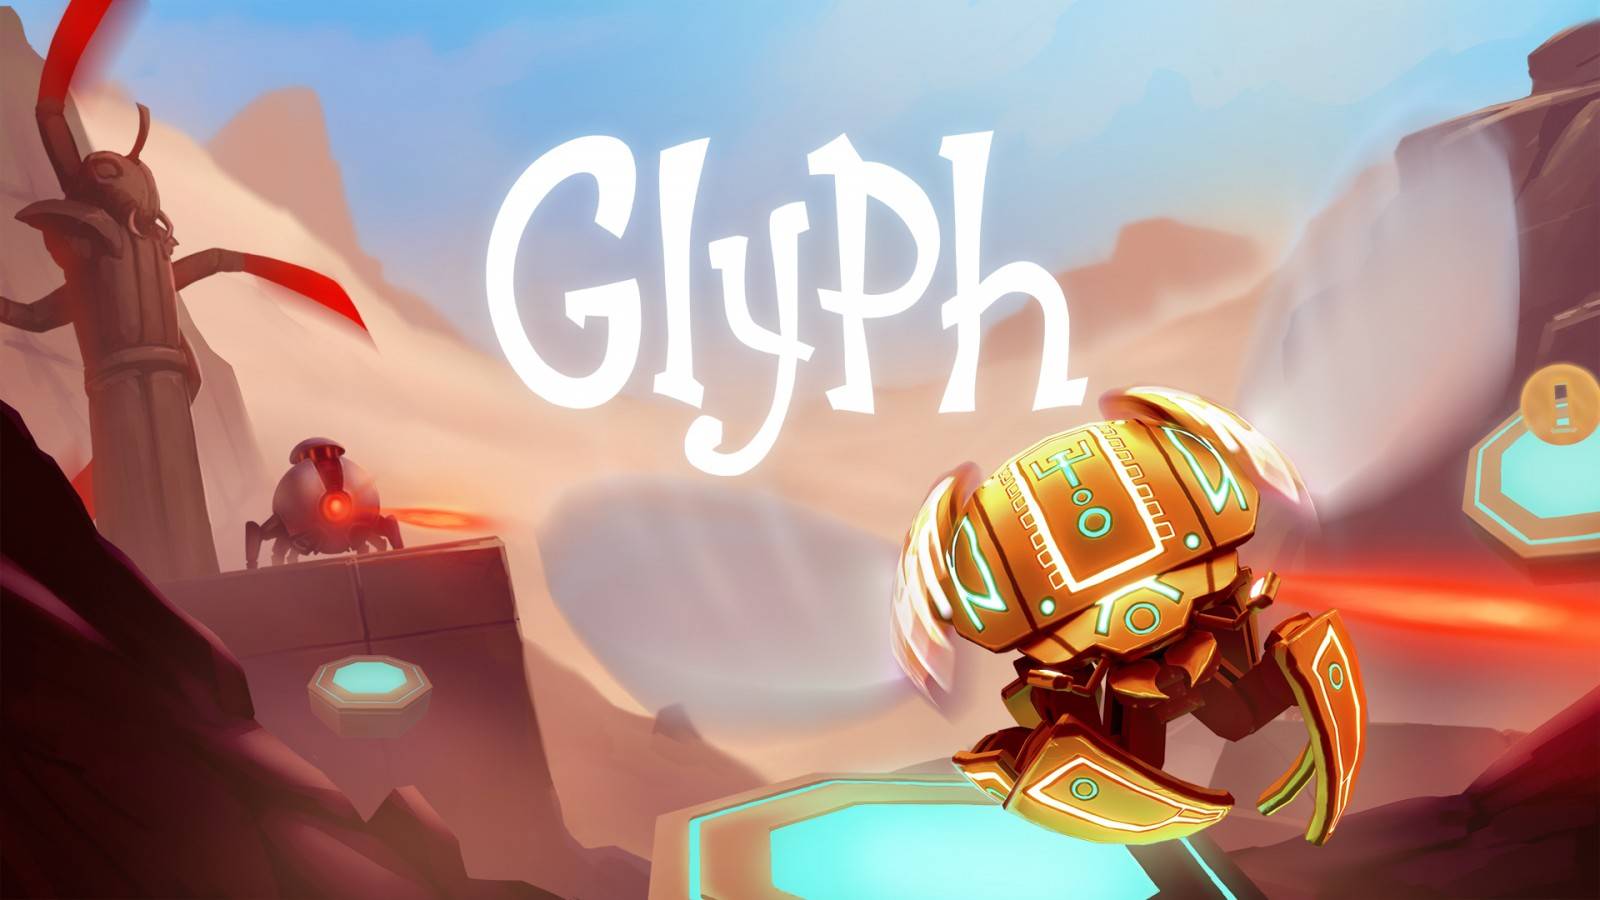 Glyph es un juego de plataformas en 3D que presenta un ambiente colorido y folclórico, donde nos ponemos las alas de un escarabajo mecánico en forma de esfera para emprender aventuras completamente divertidas e innovadoras.